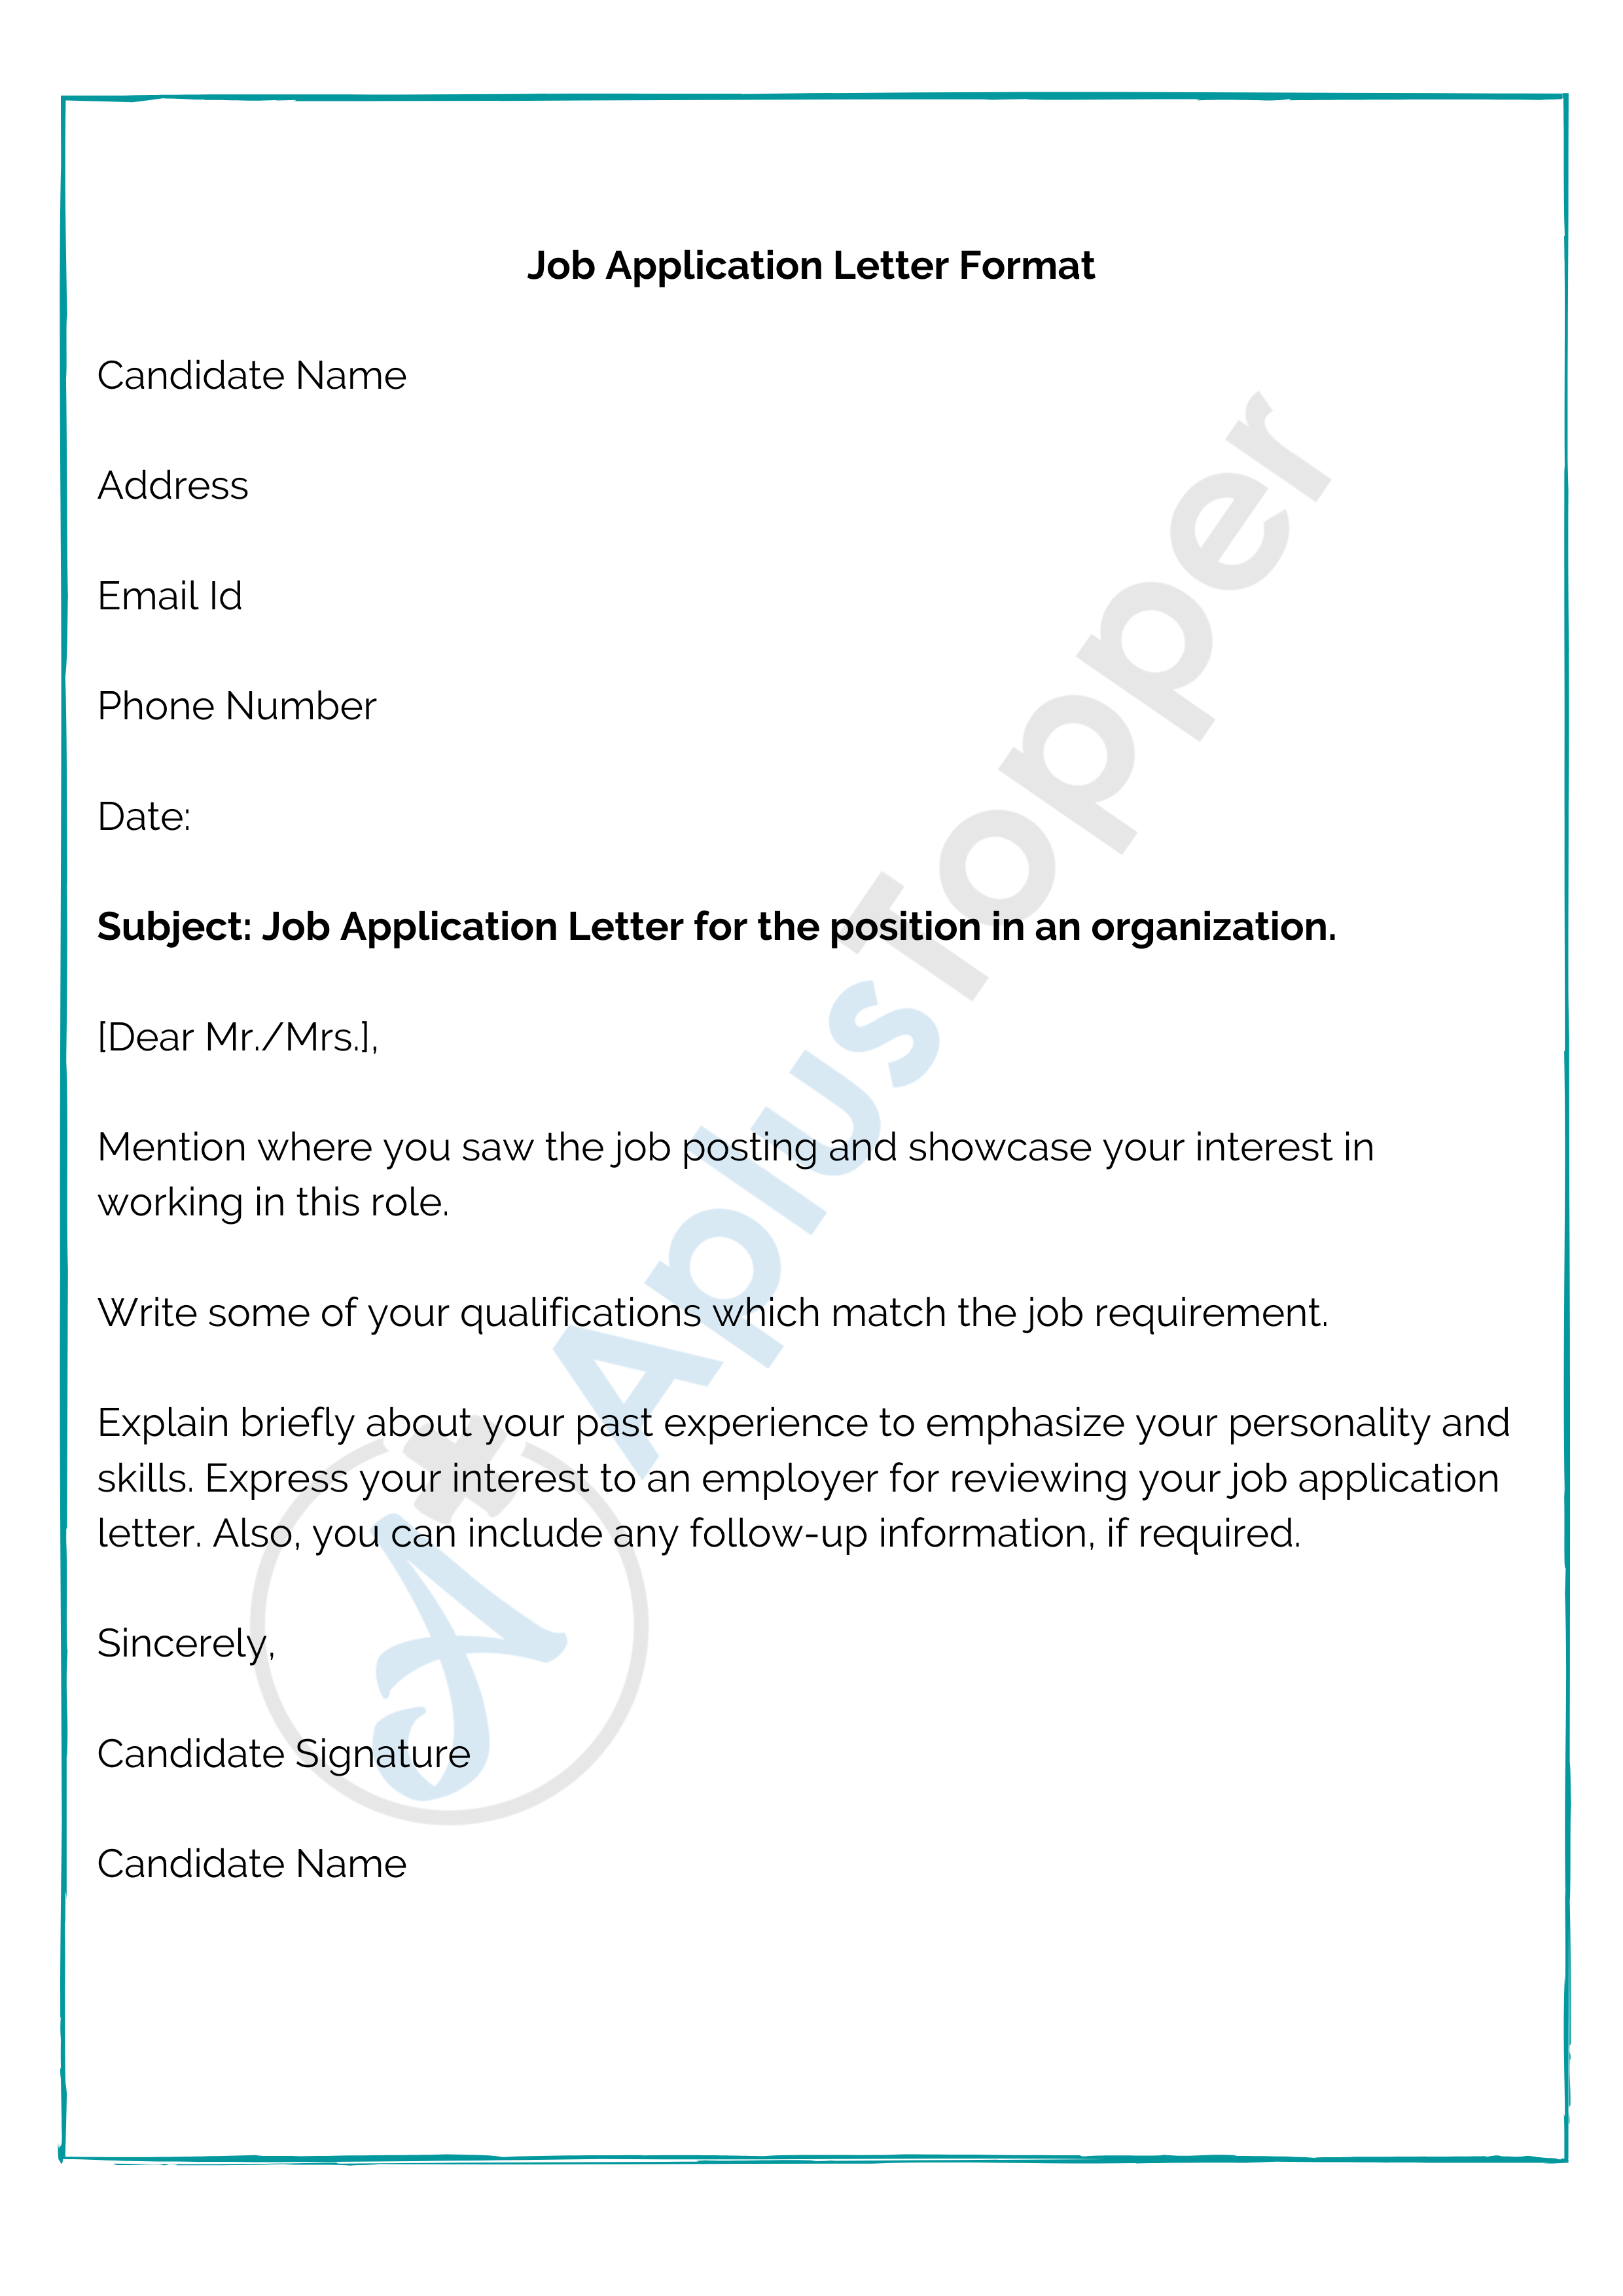 open application letter for job